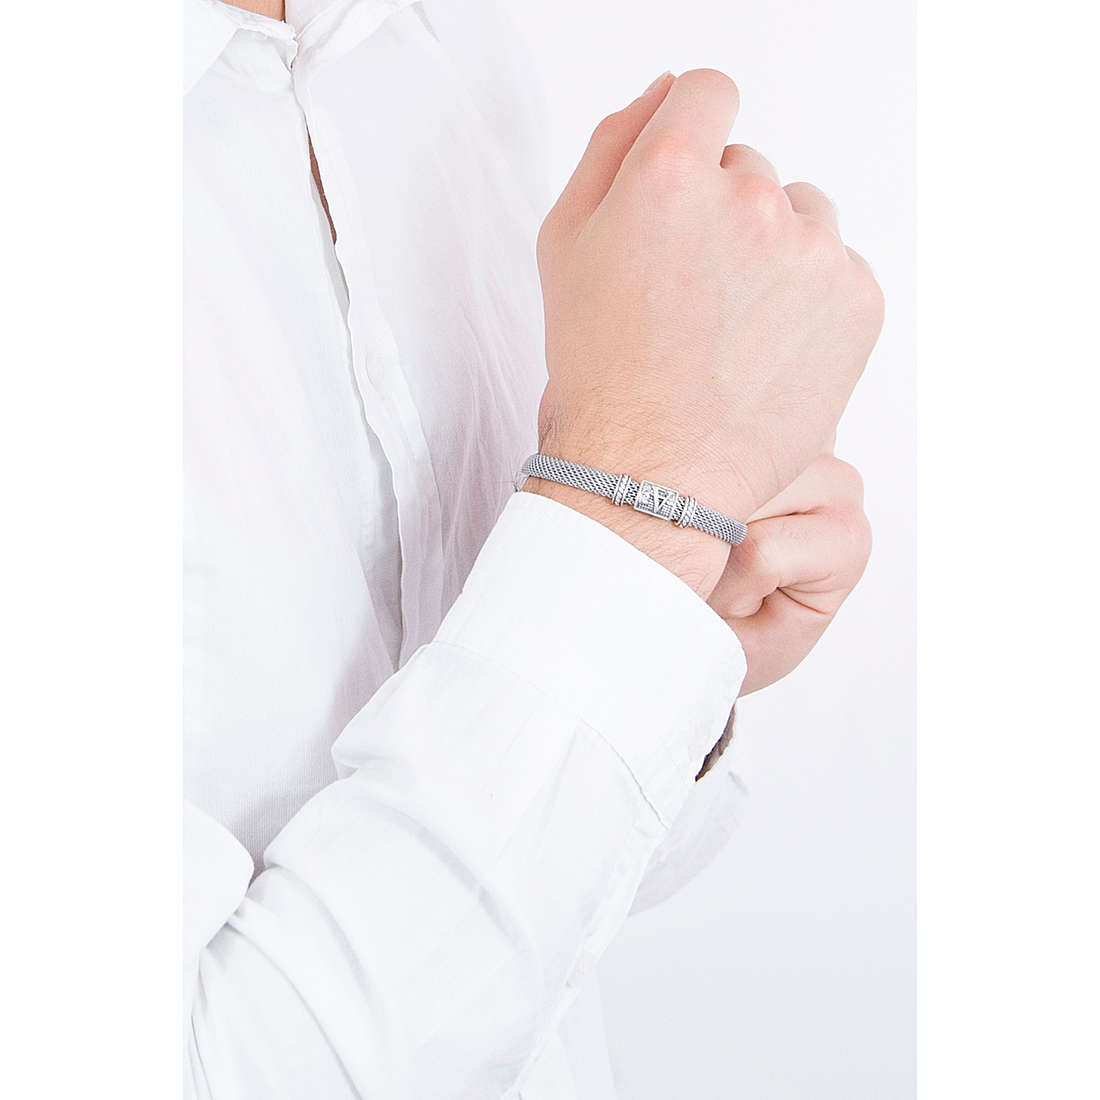 Cesare Paciotti bracelets Silver Initial homme JPNC1896M4 Je porte